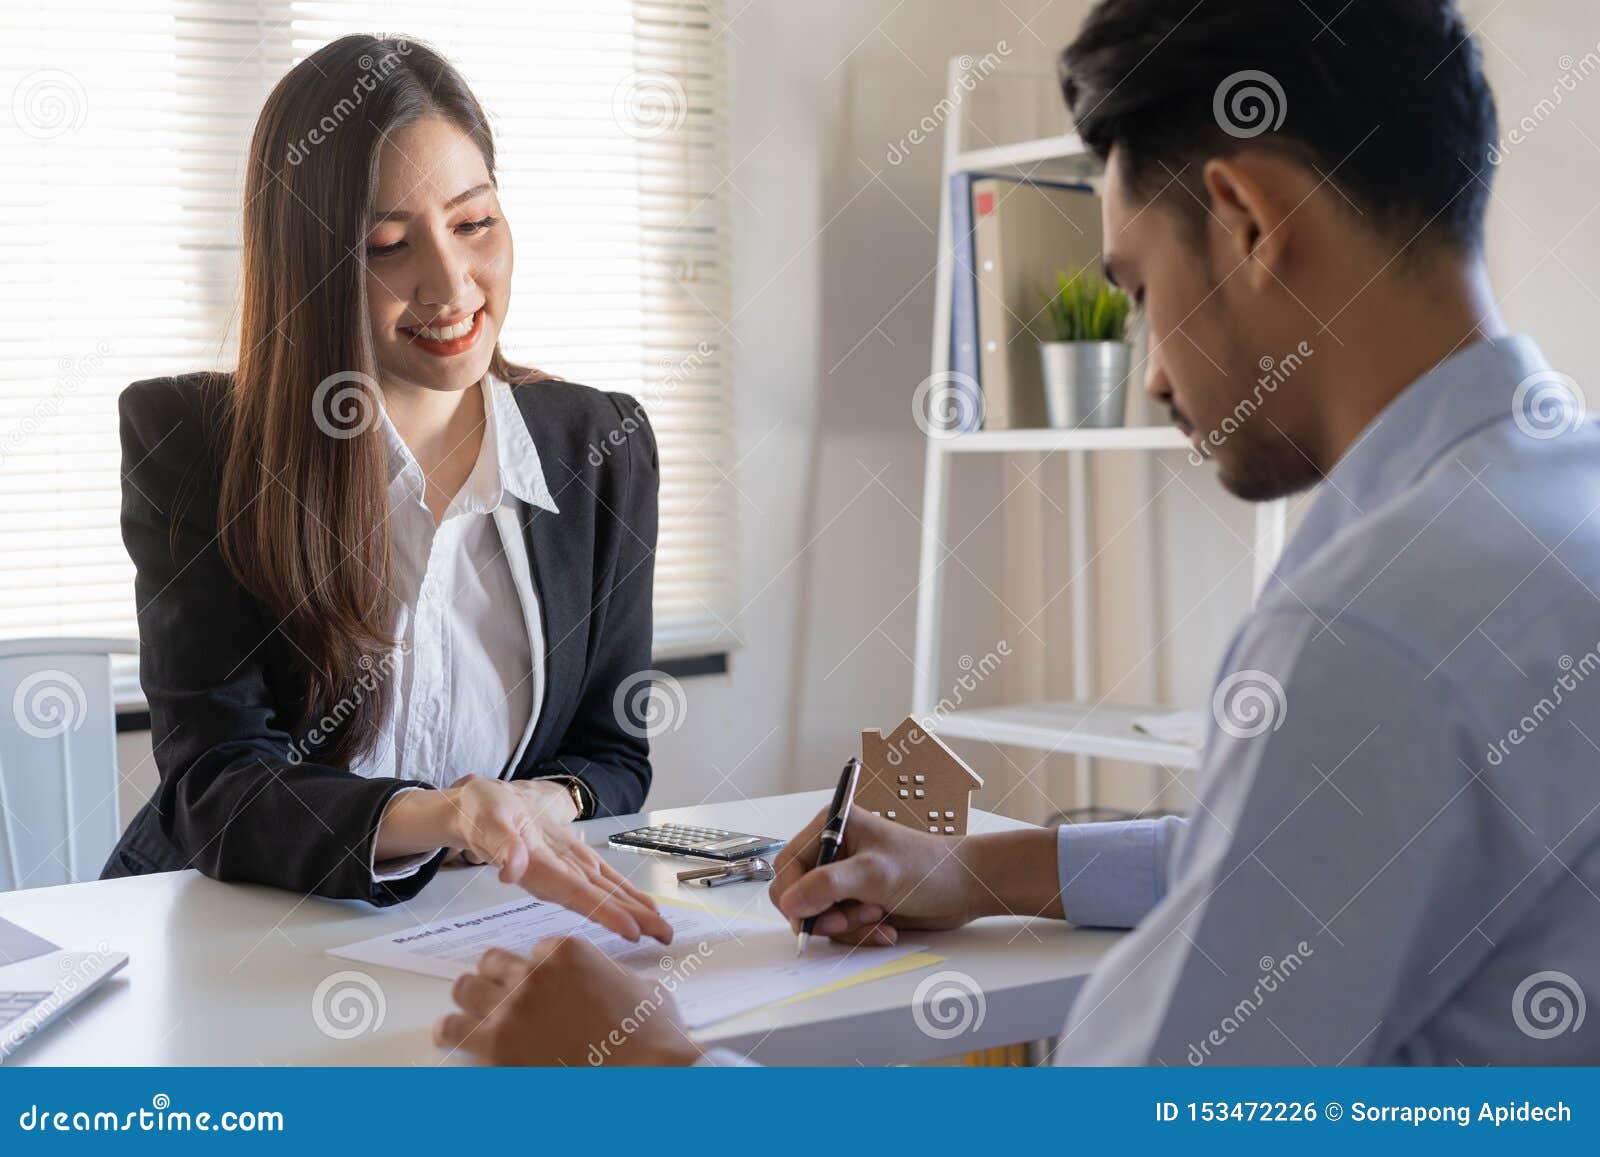 推销员让男性顾客签销售合约 亚裔妇女 并且人在办公室做生意 事务库存照片 图片包括有